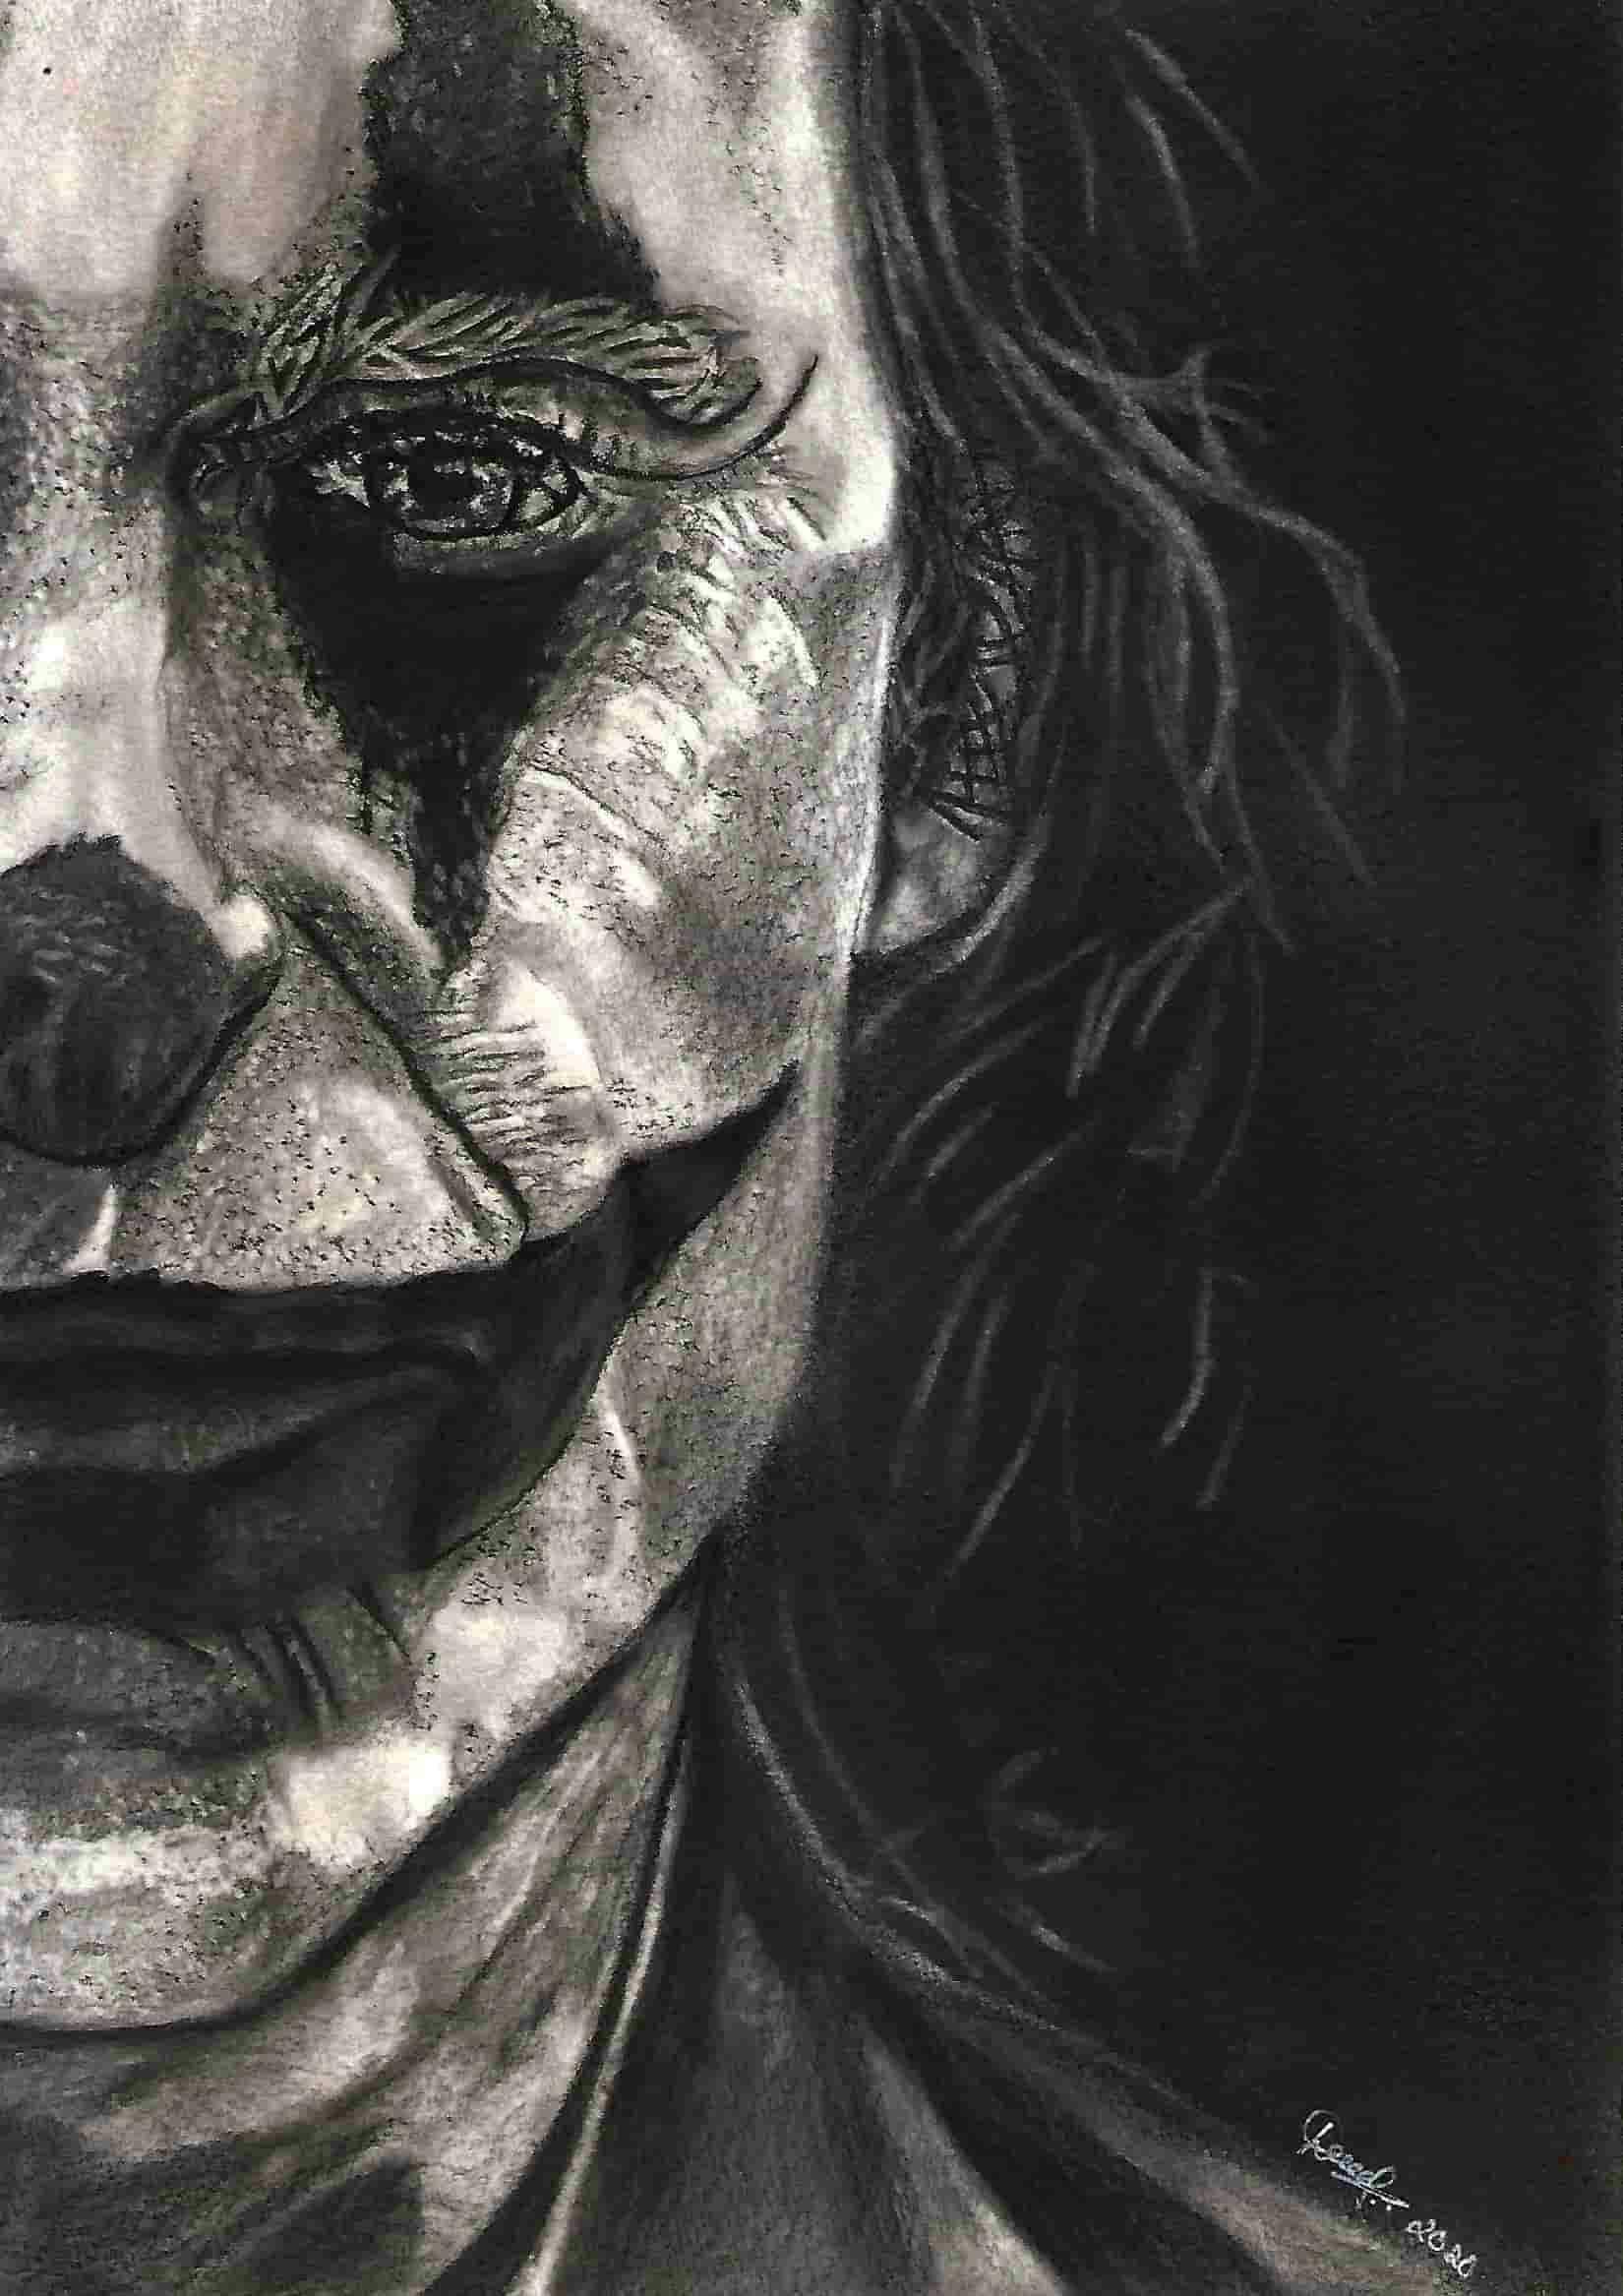 Pencil sketch of Joker from Joker Movie